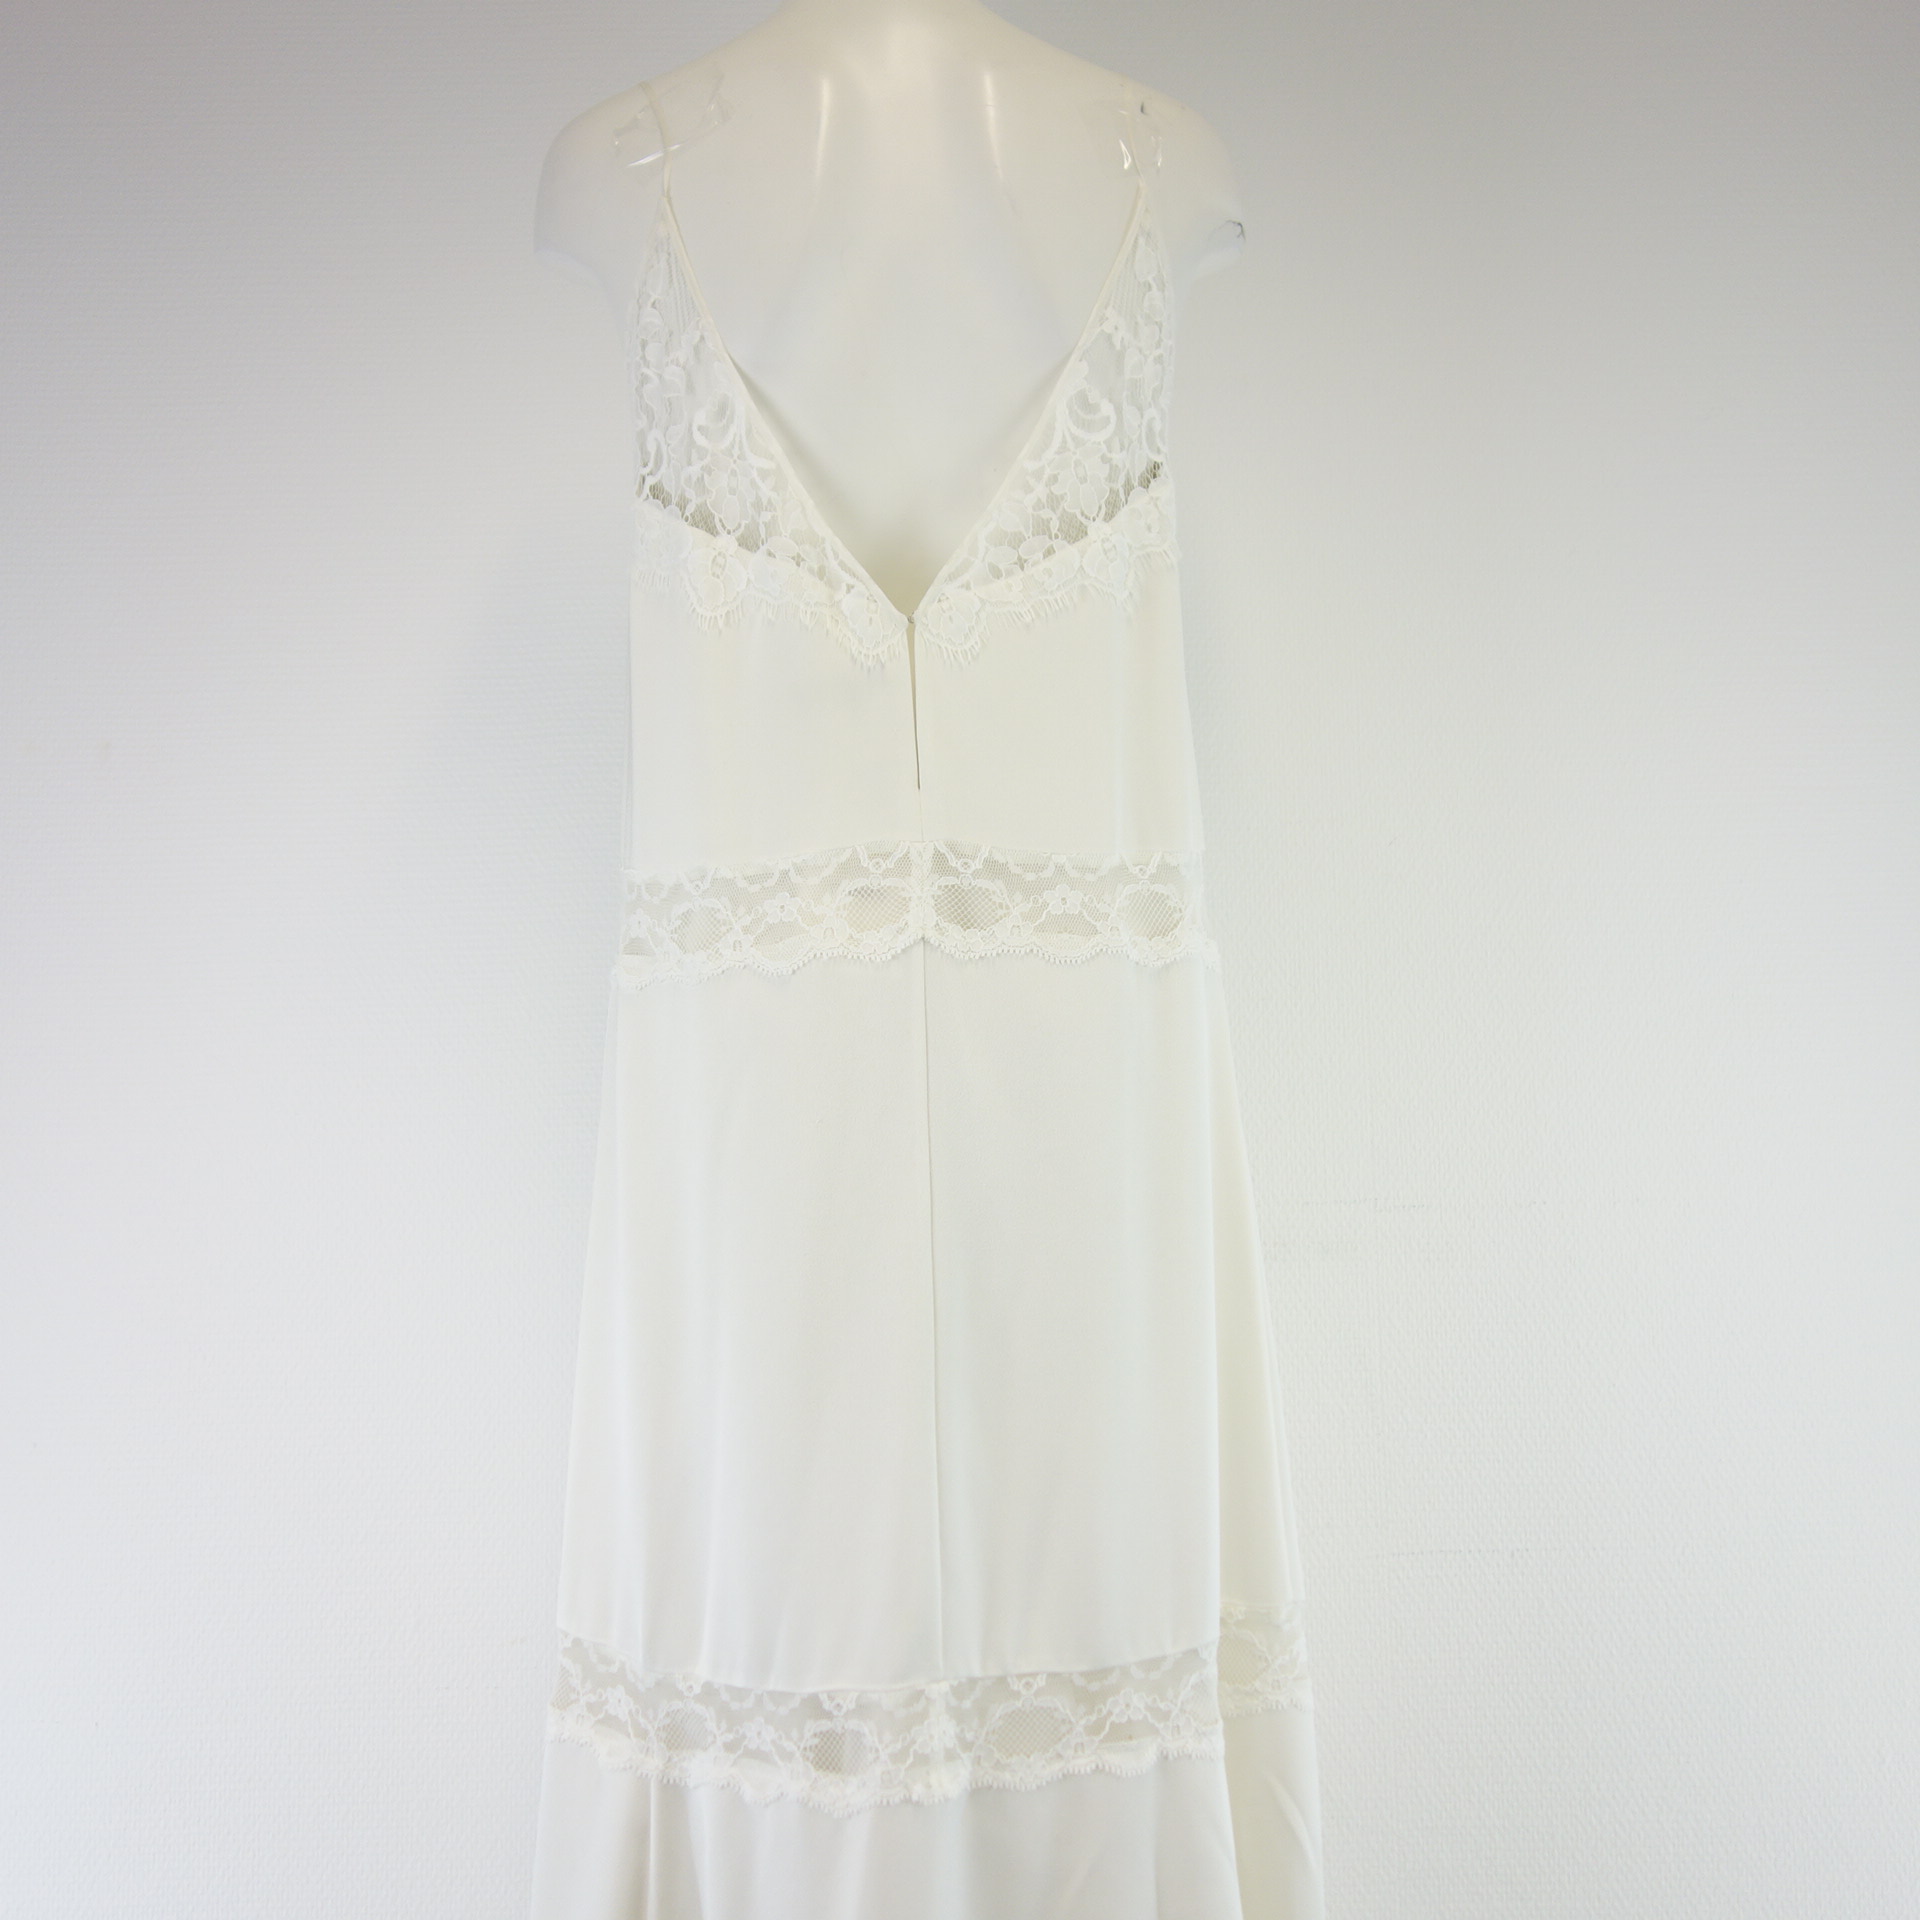 THEORY Damen Langes Kleid Maxikleid Weiß Hängerchen Spaghetti Träger Ibiza Style